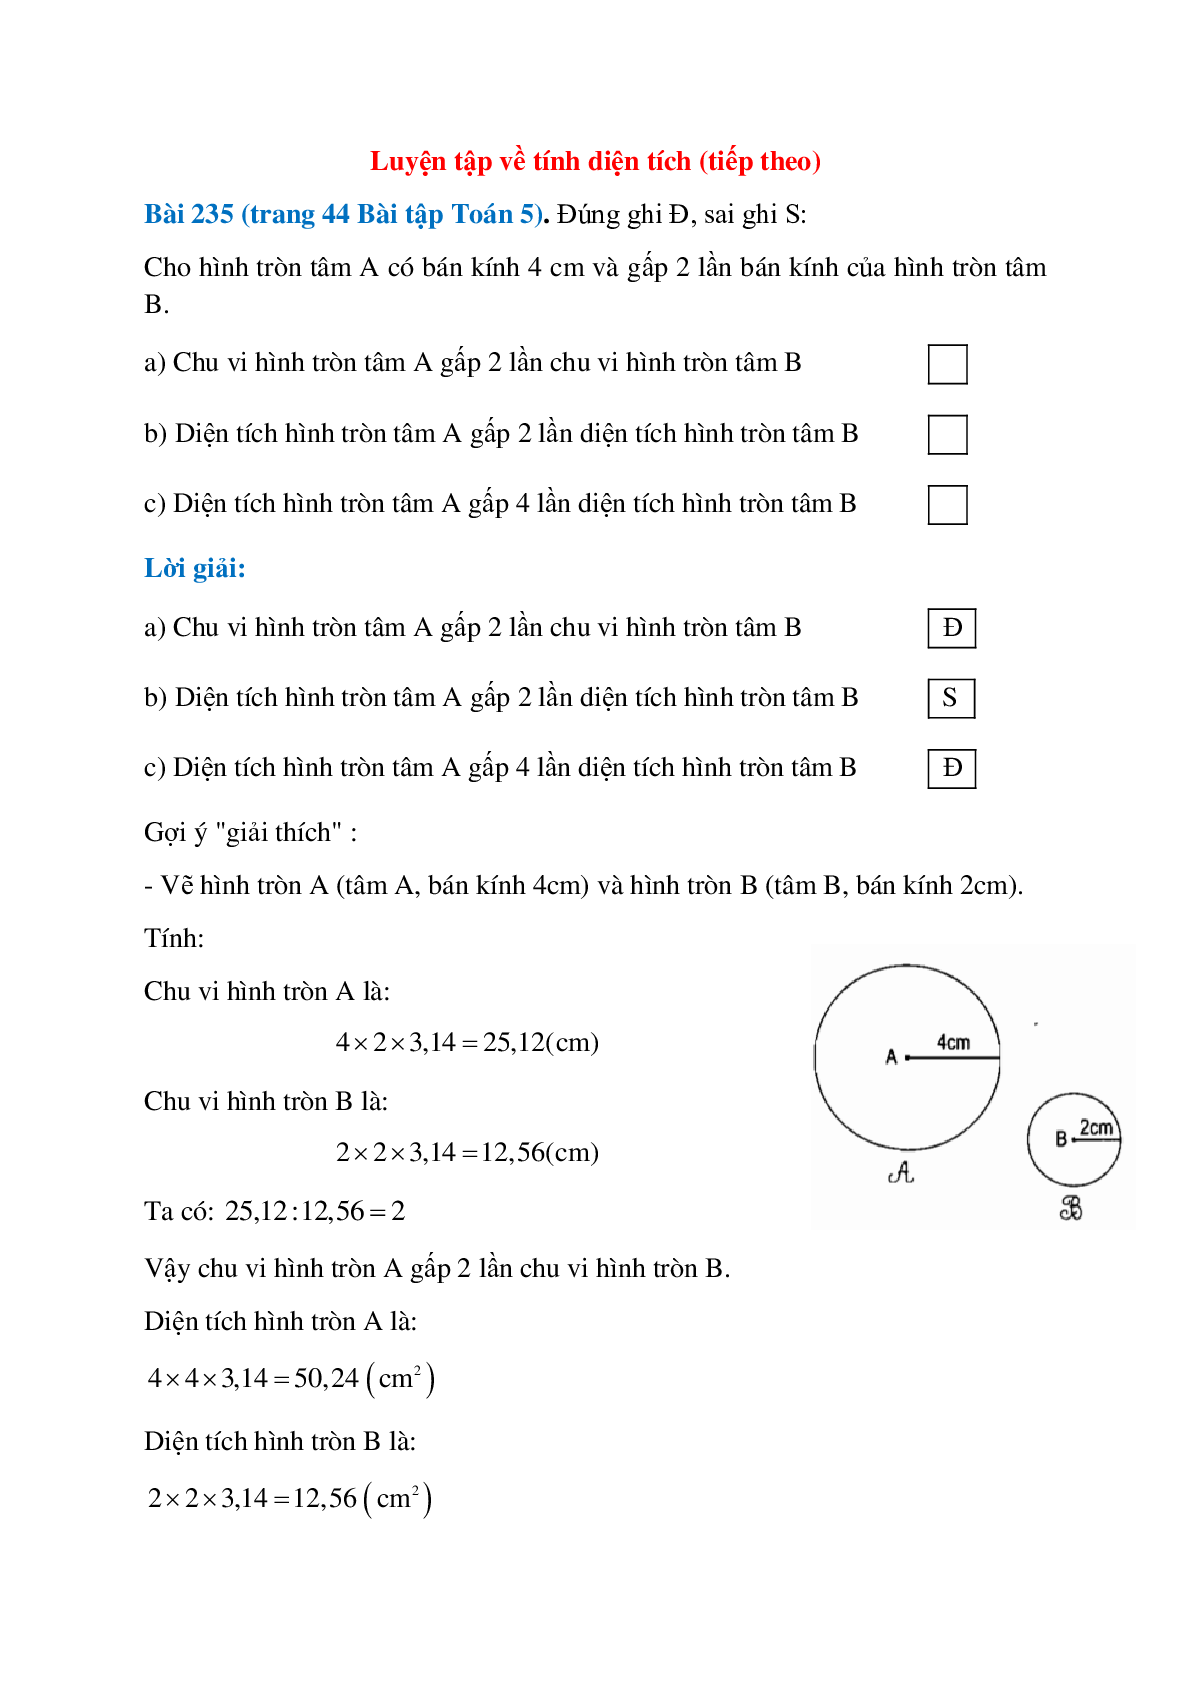 Đúng ghi Đ, sai ghi S: Cho hình tròn tâm A có bán kính 4 cm (trang 1)